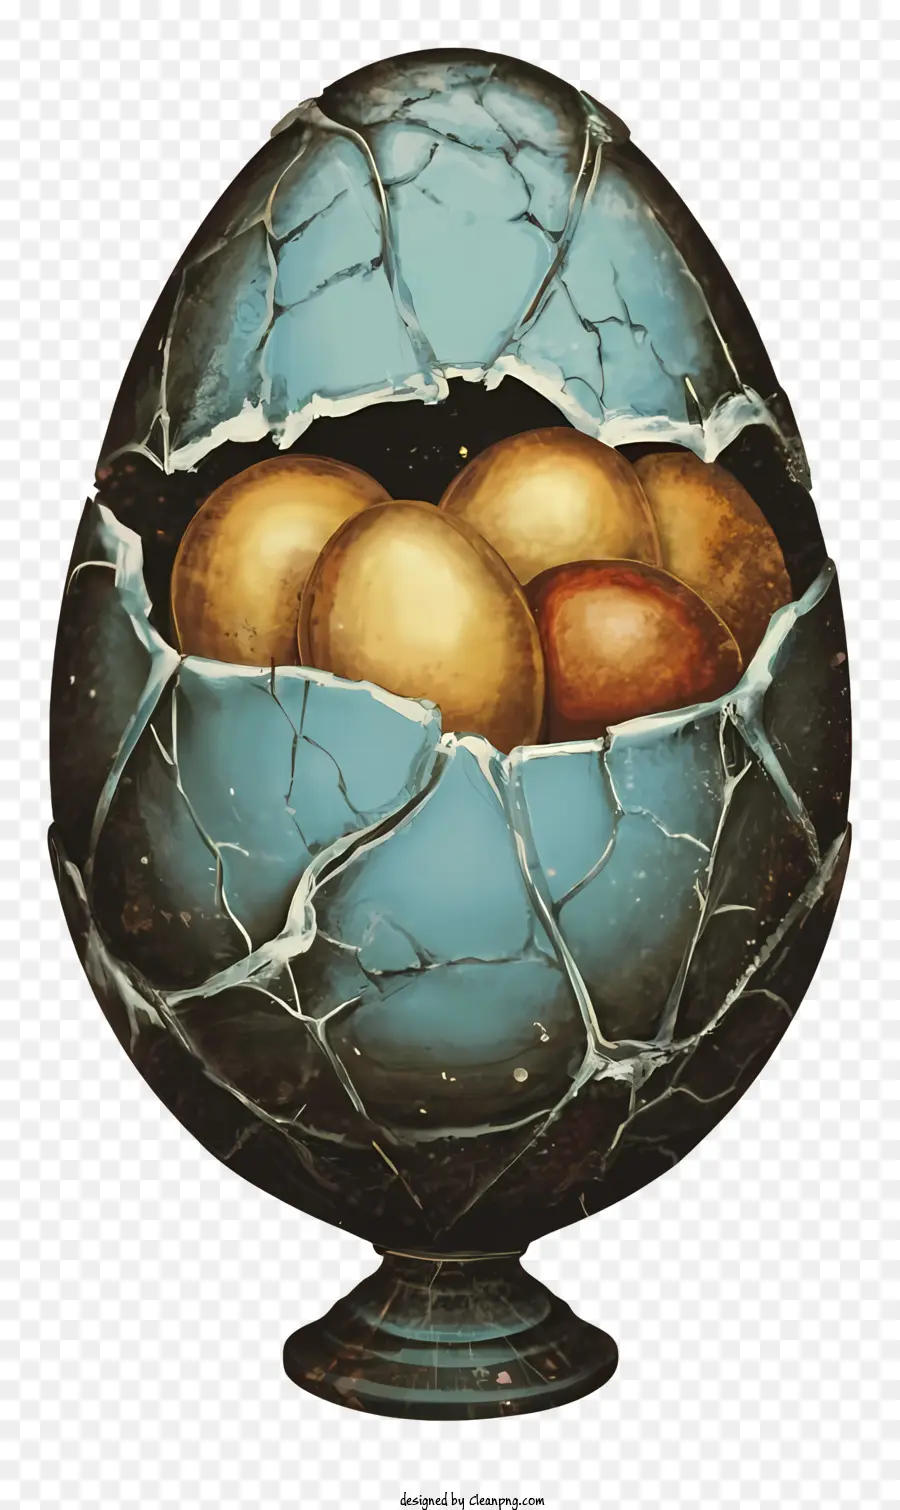 Trứng vỡ nứt trứng trứng vàng trứng màu nâu tiếp xúc với lòng đỏ - Vỏ trứng nứt với lòng đỏ màu vàng và nâu